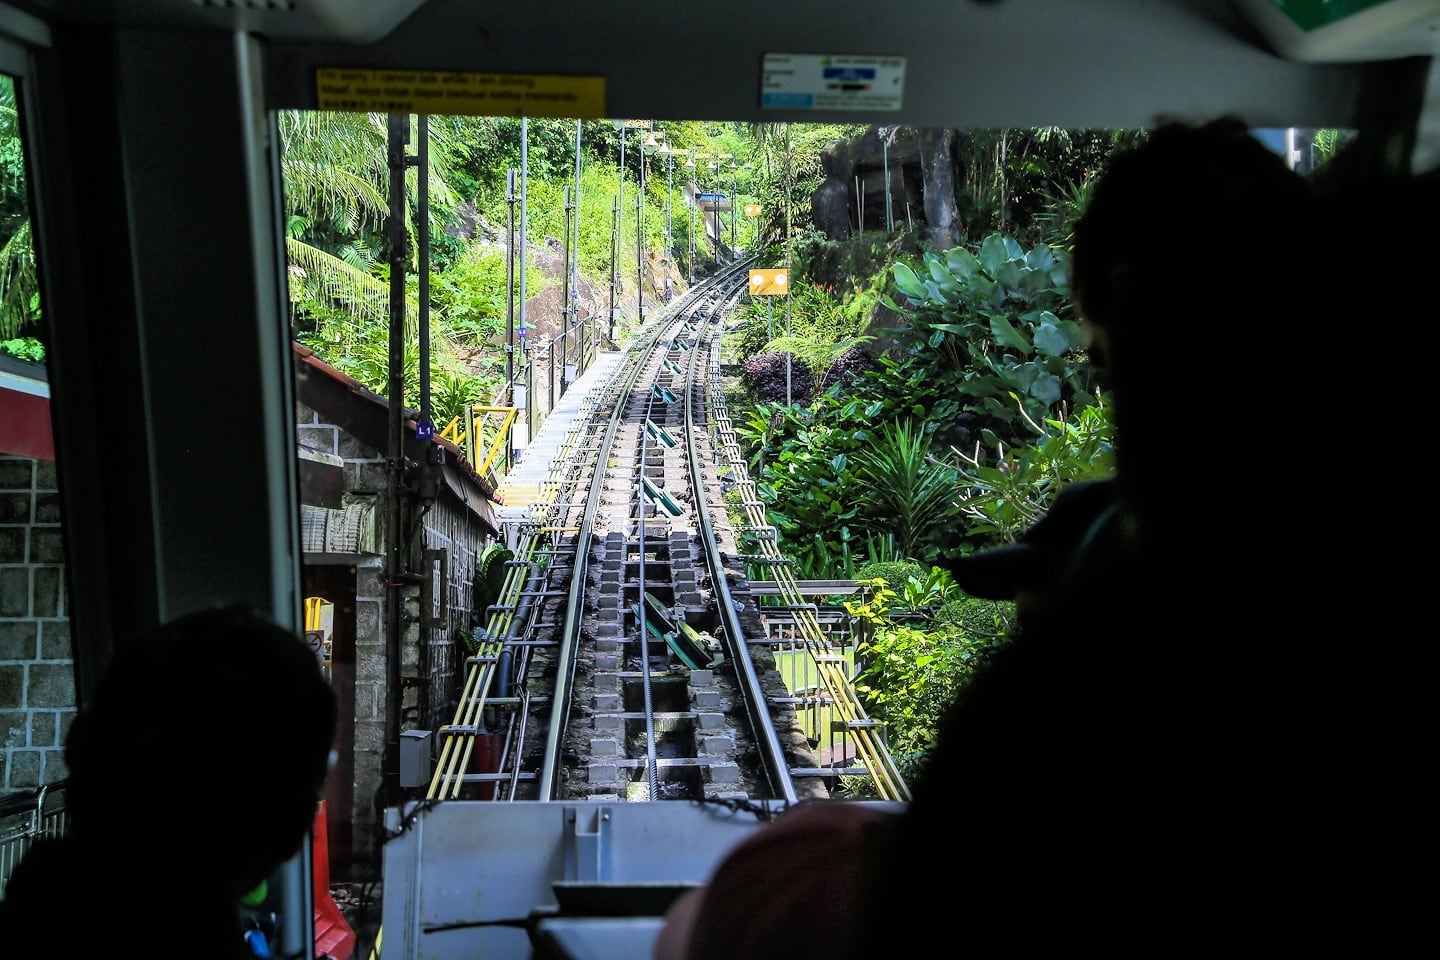 Penang Hill Railway funicular train